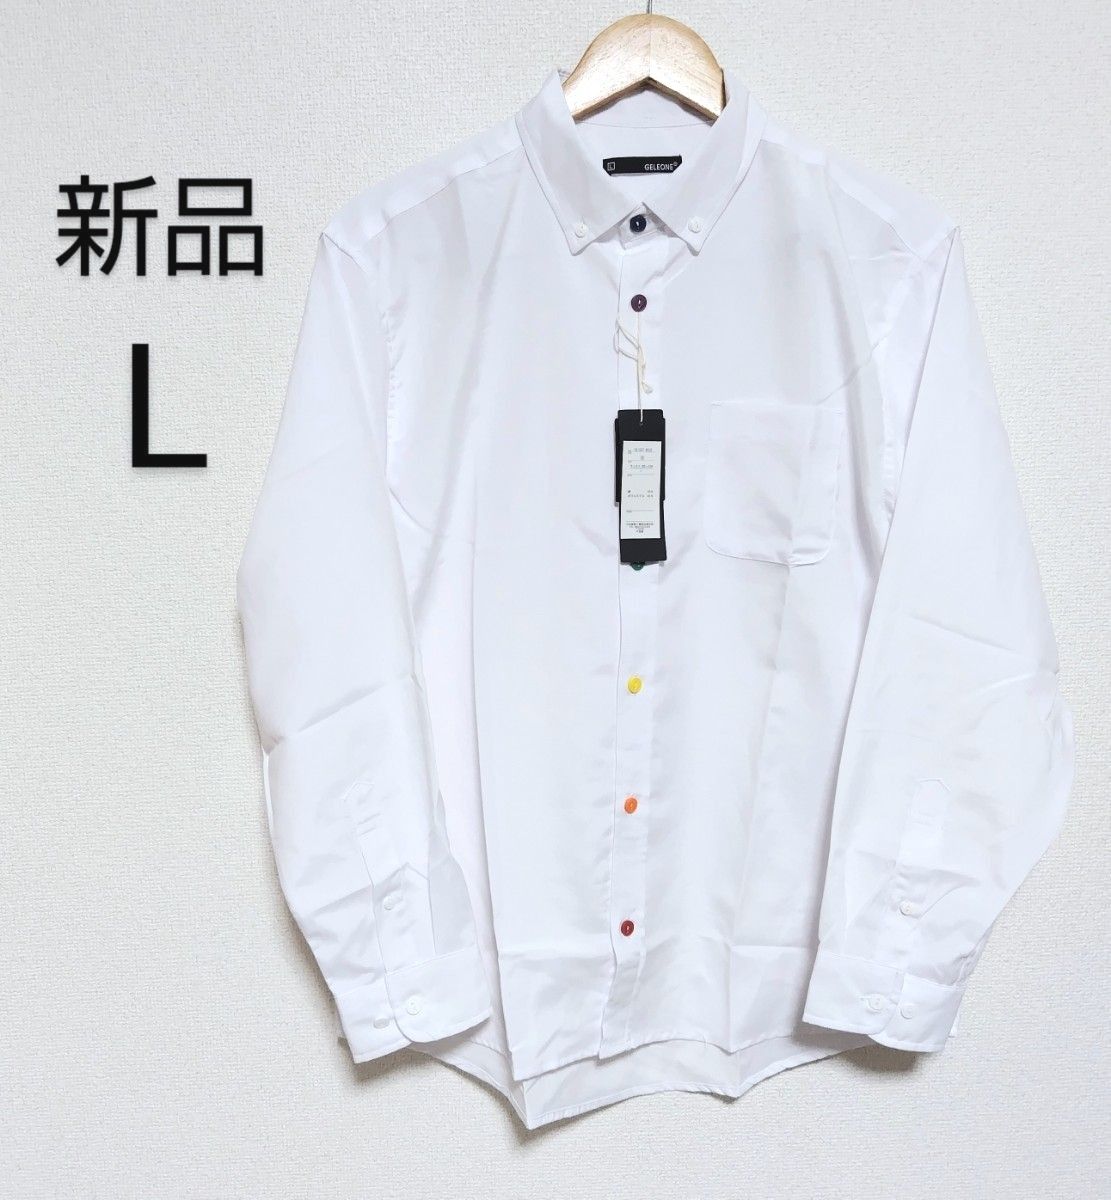 【新品】GELEONE オックスフォードボタンダウンシャツ 長袖 カラーボタン ホワイト Lサイズ